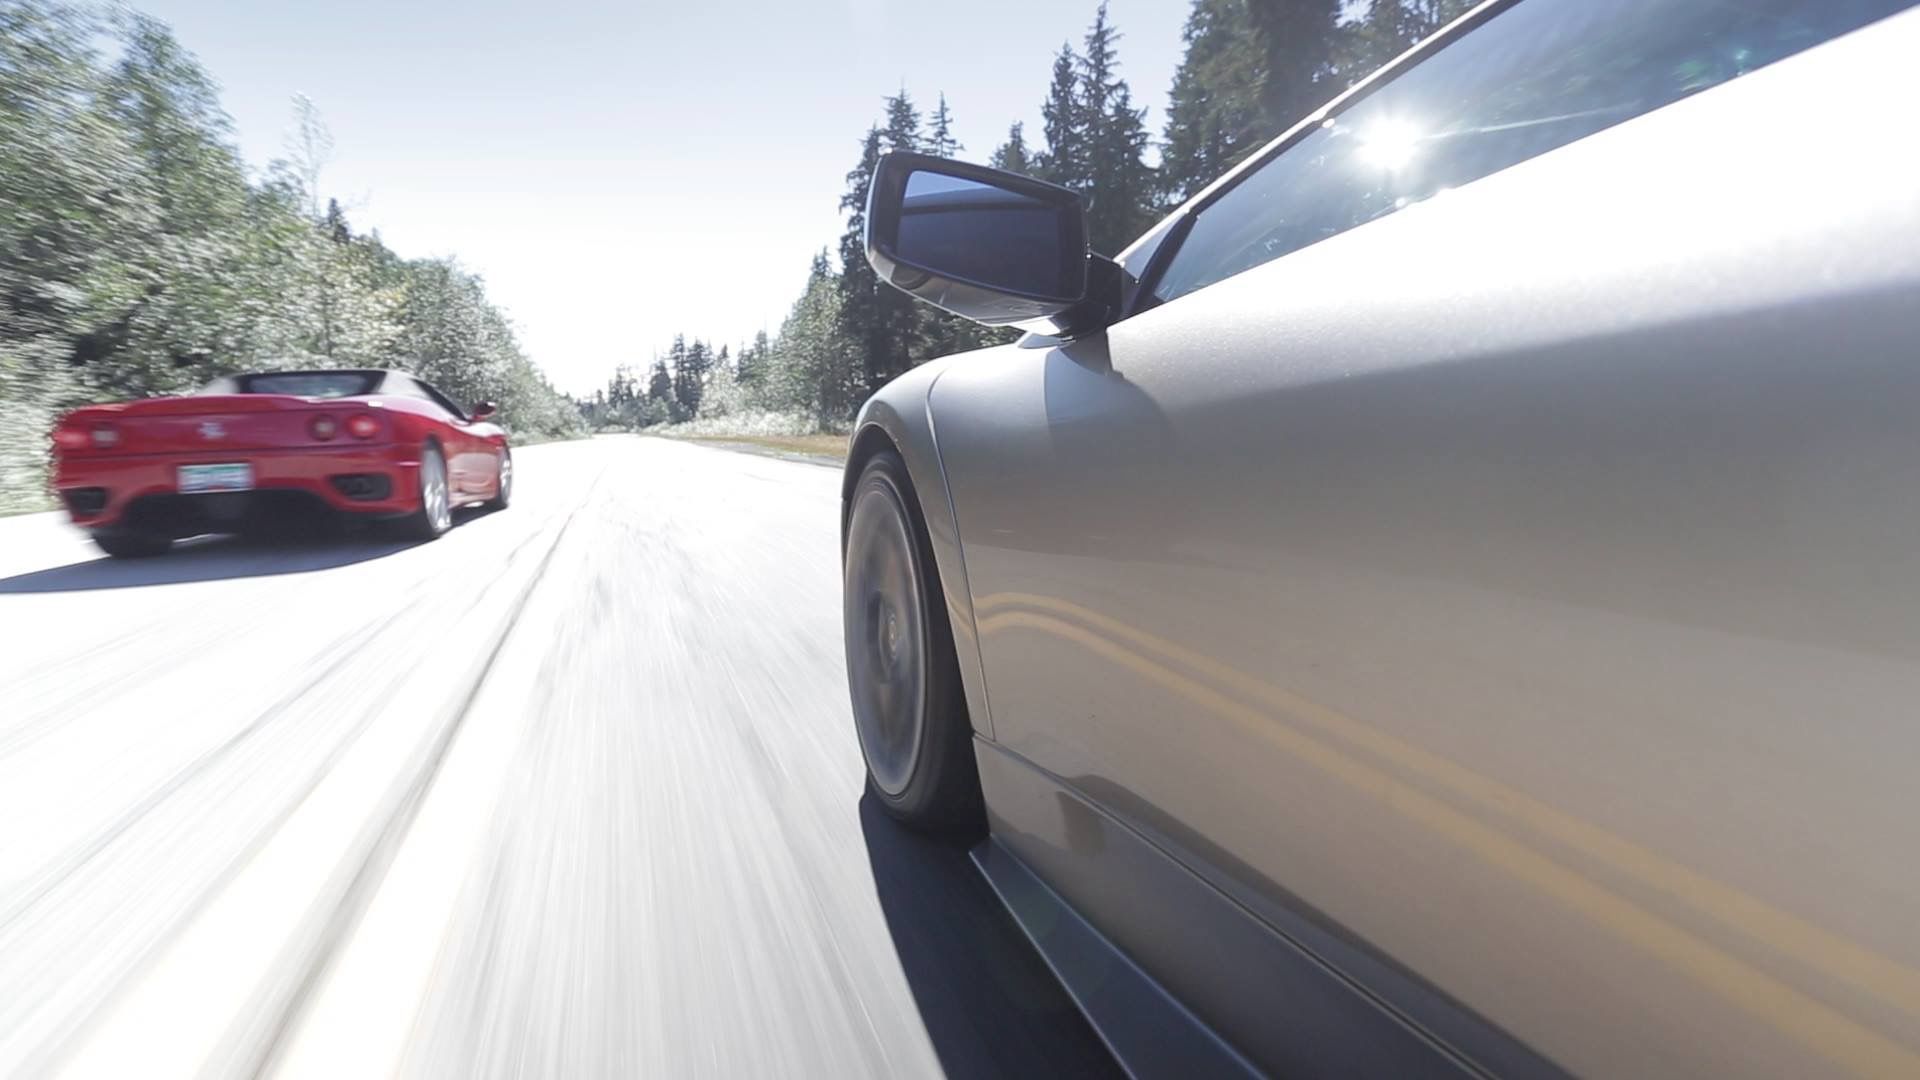 Filming with a Ferrari 360 Modena & a Lamborghini Murcielago